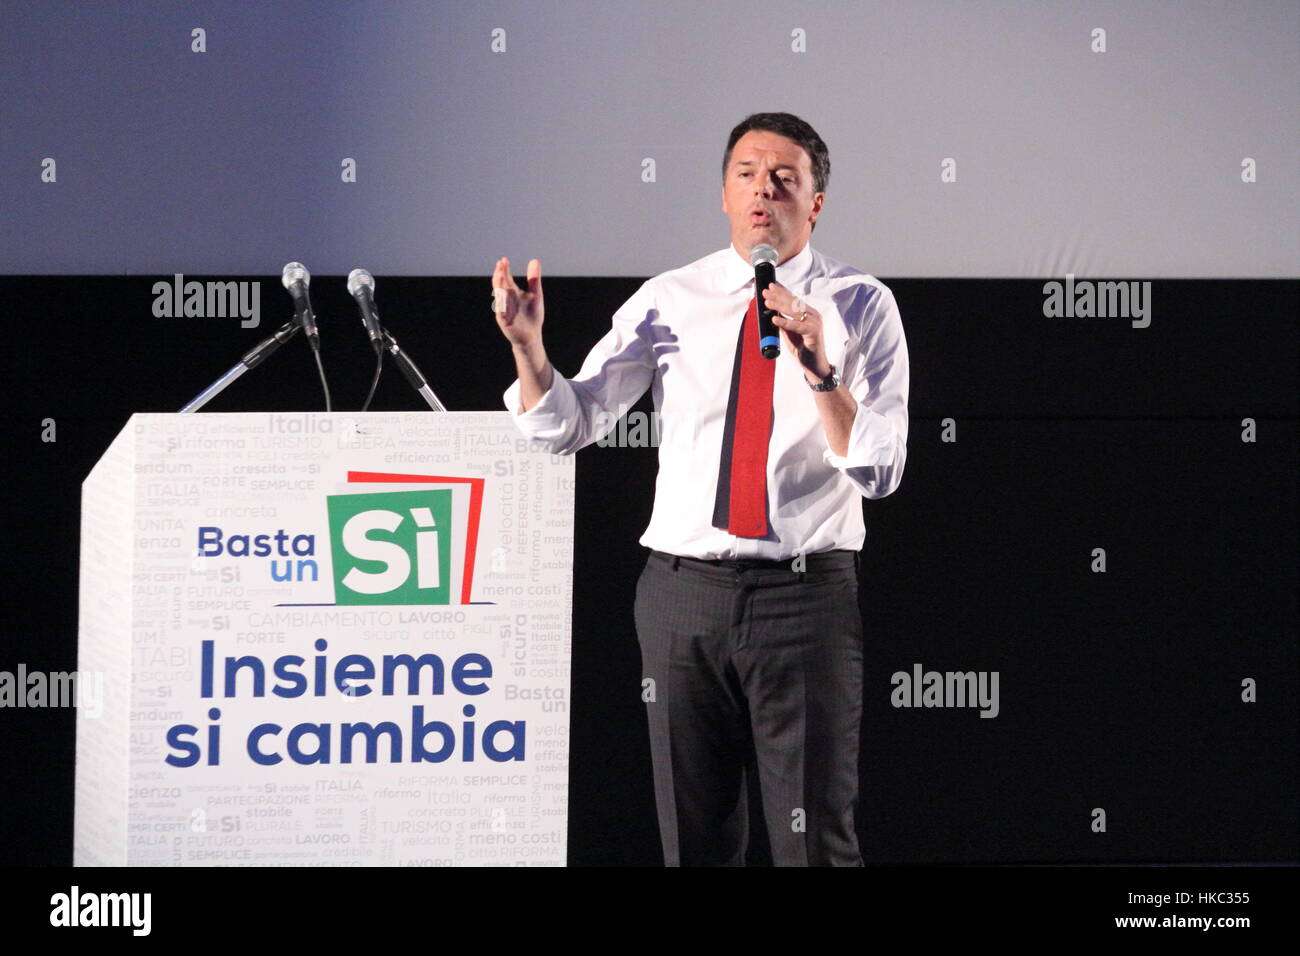 Frosinone, Italia - 8 novembre 2016: La campagna elettorale di Matteo Renzi per il Referendum costituzionale Stockfoto